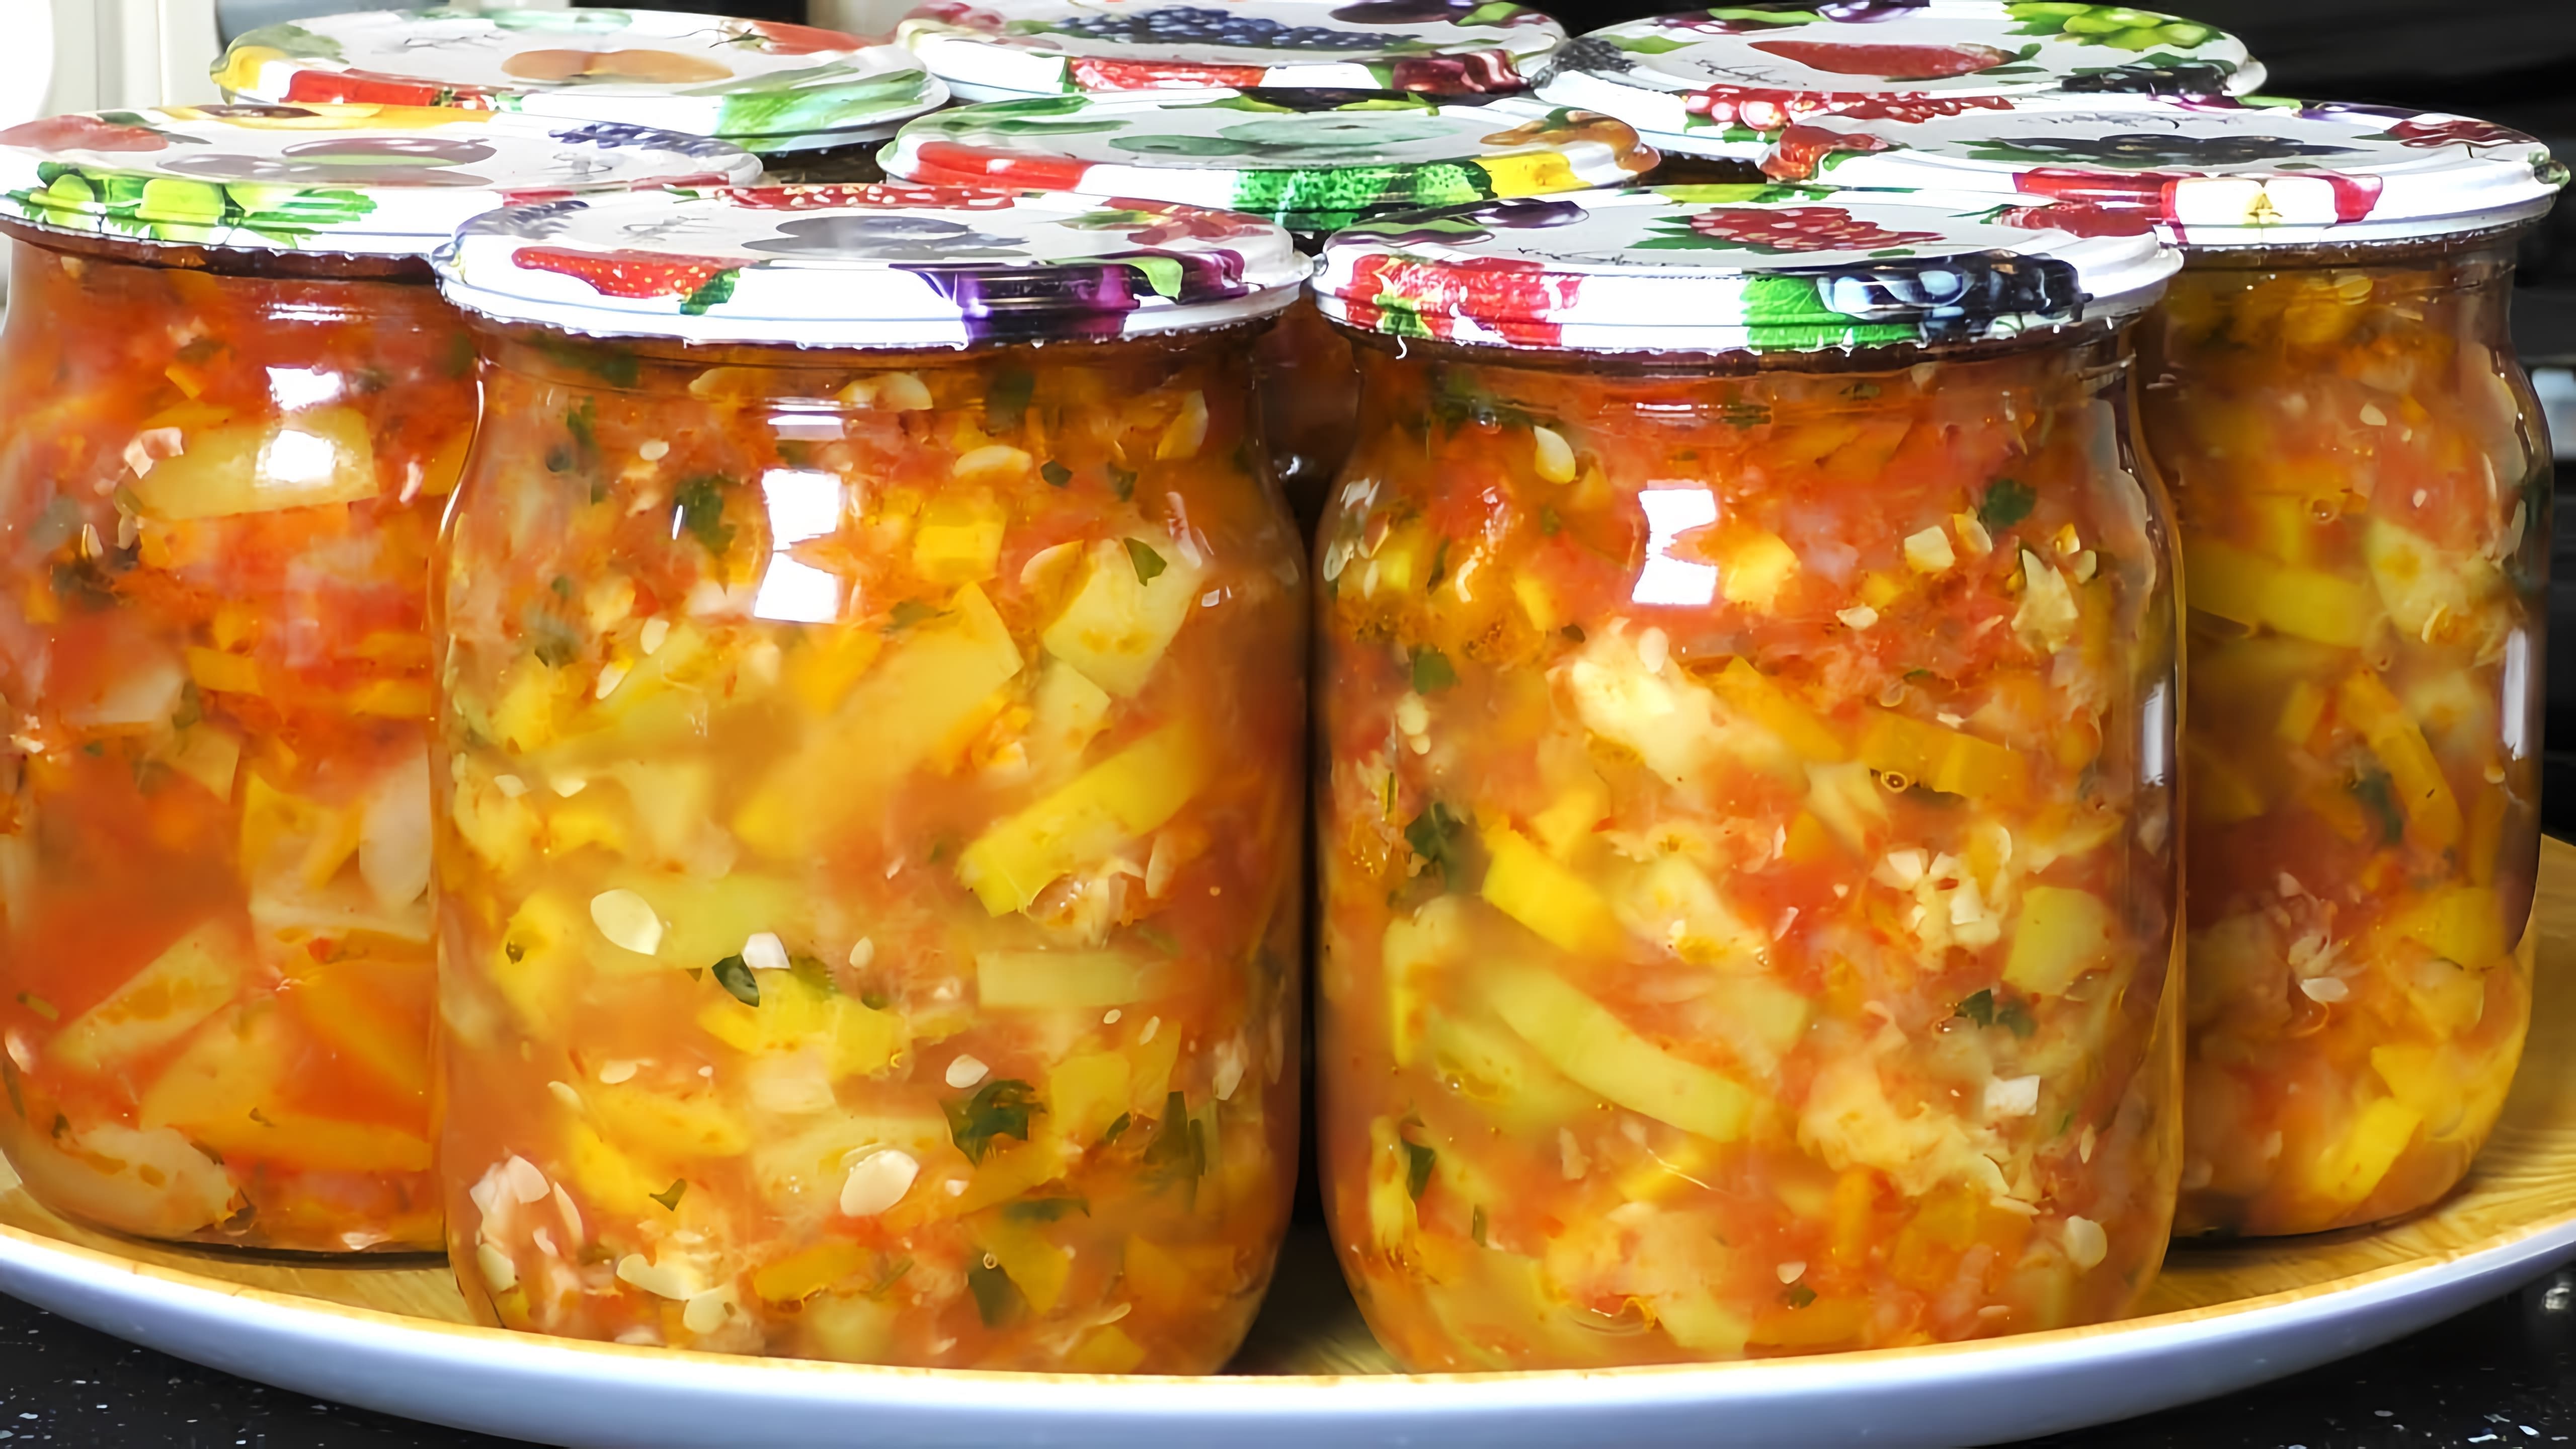 Видео как приготовить маринованные овощи из цуккини, моркови, лука и помидоров в острой томатной подливе для хранения на зиму